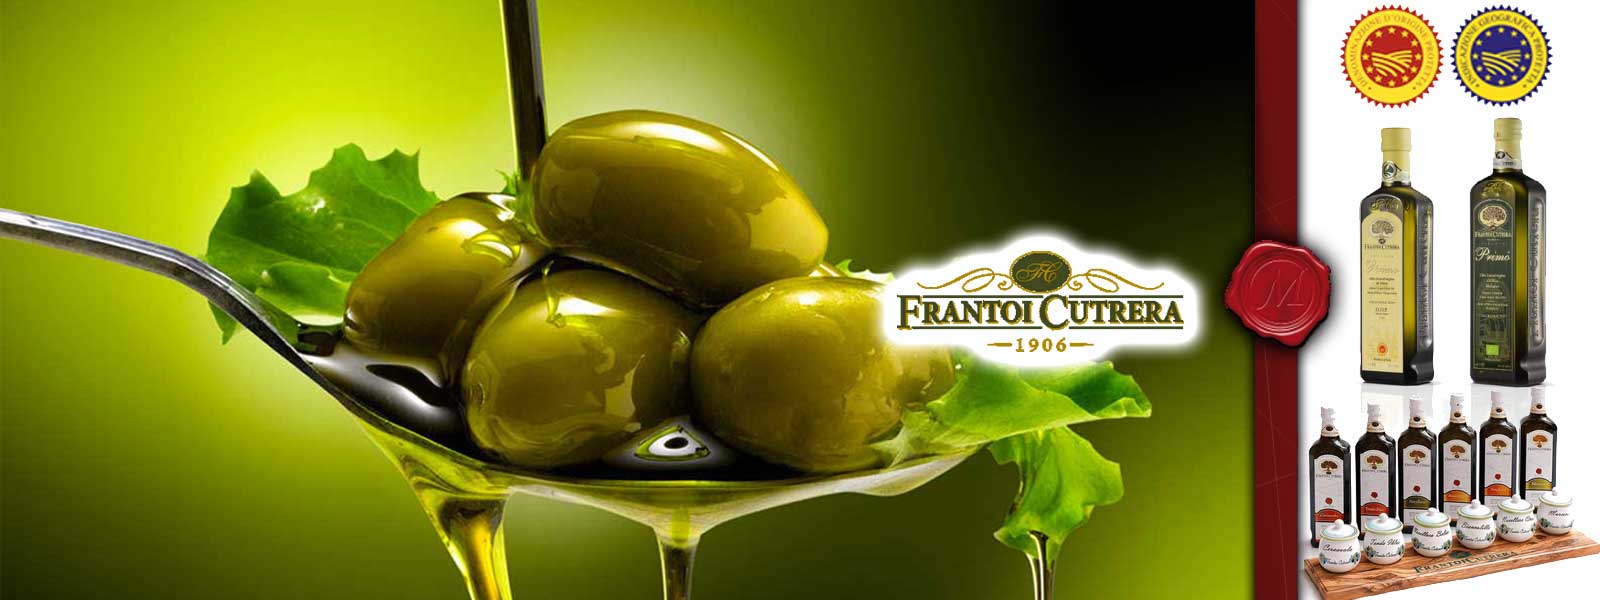 Olivenolje fra Frantoi Cutrera 